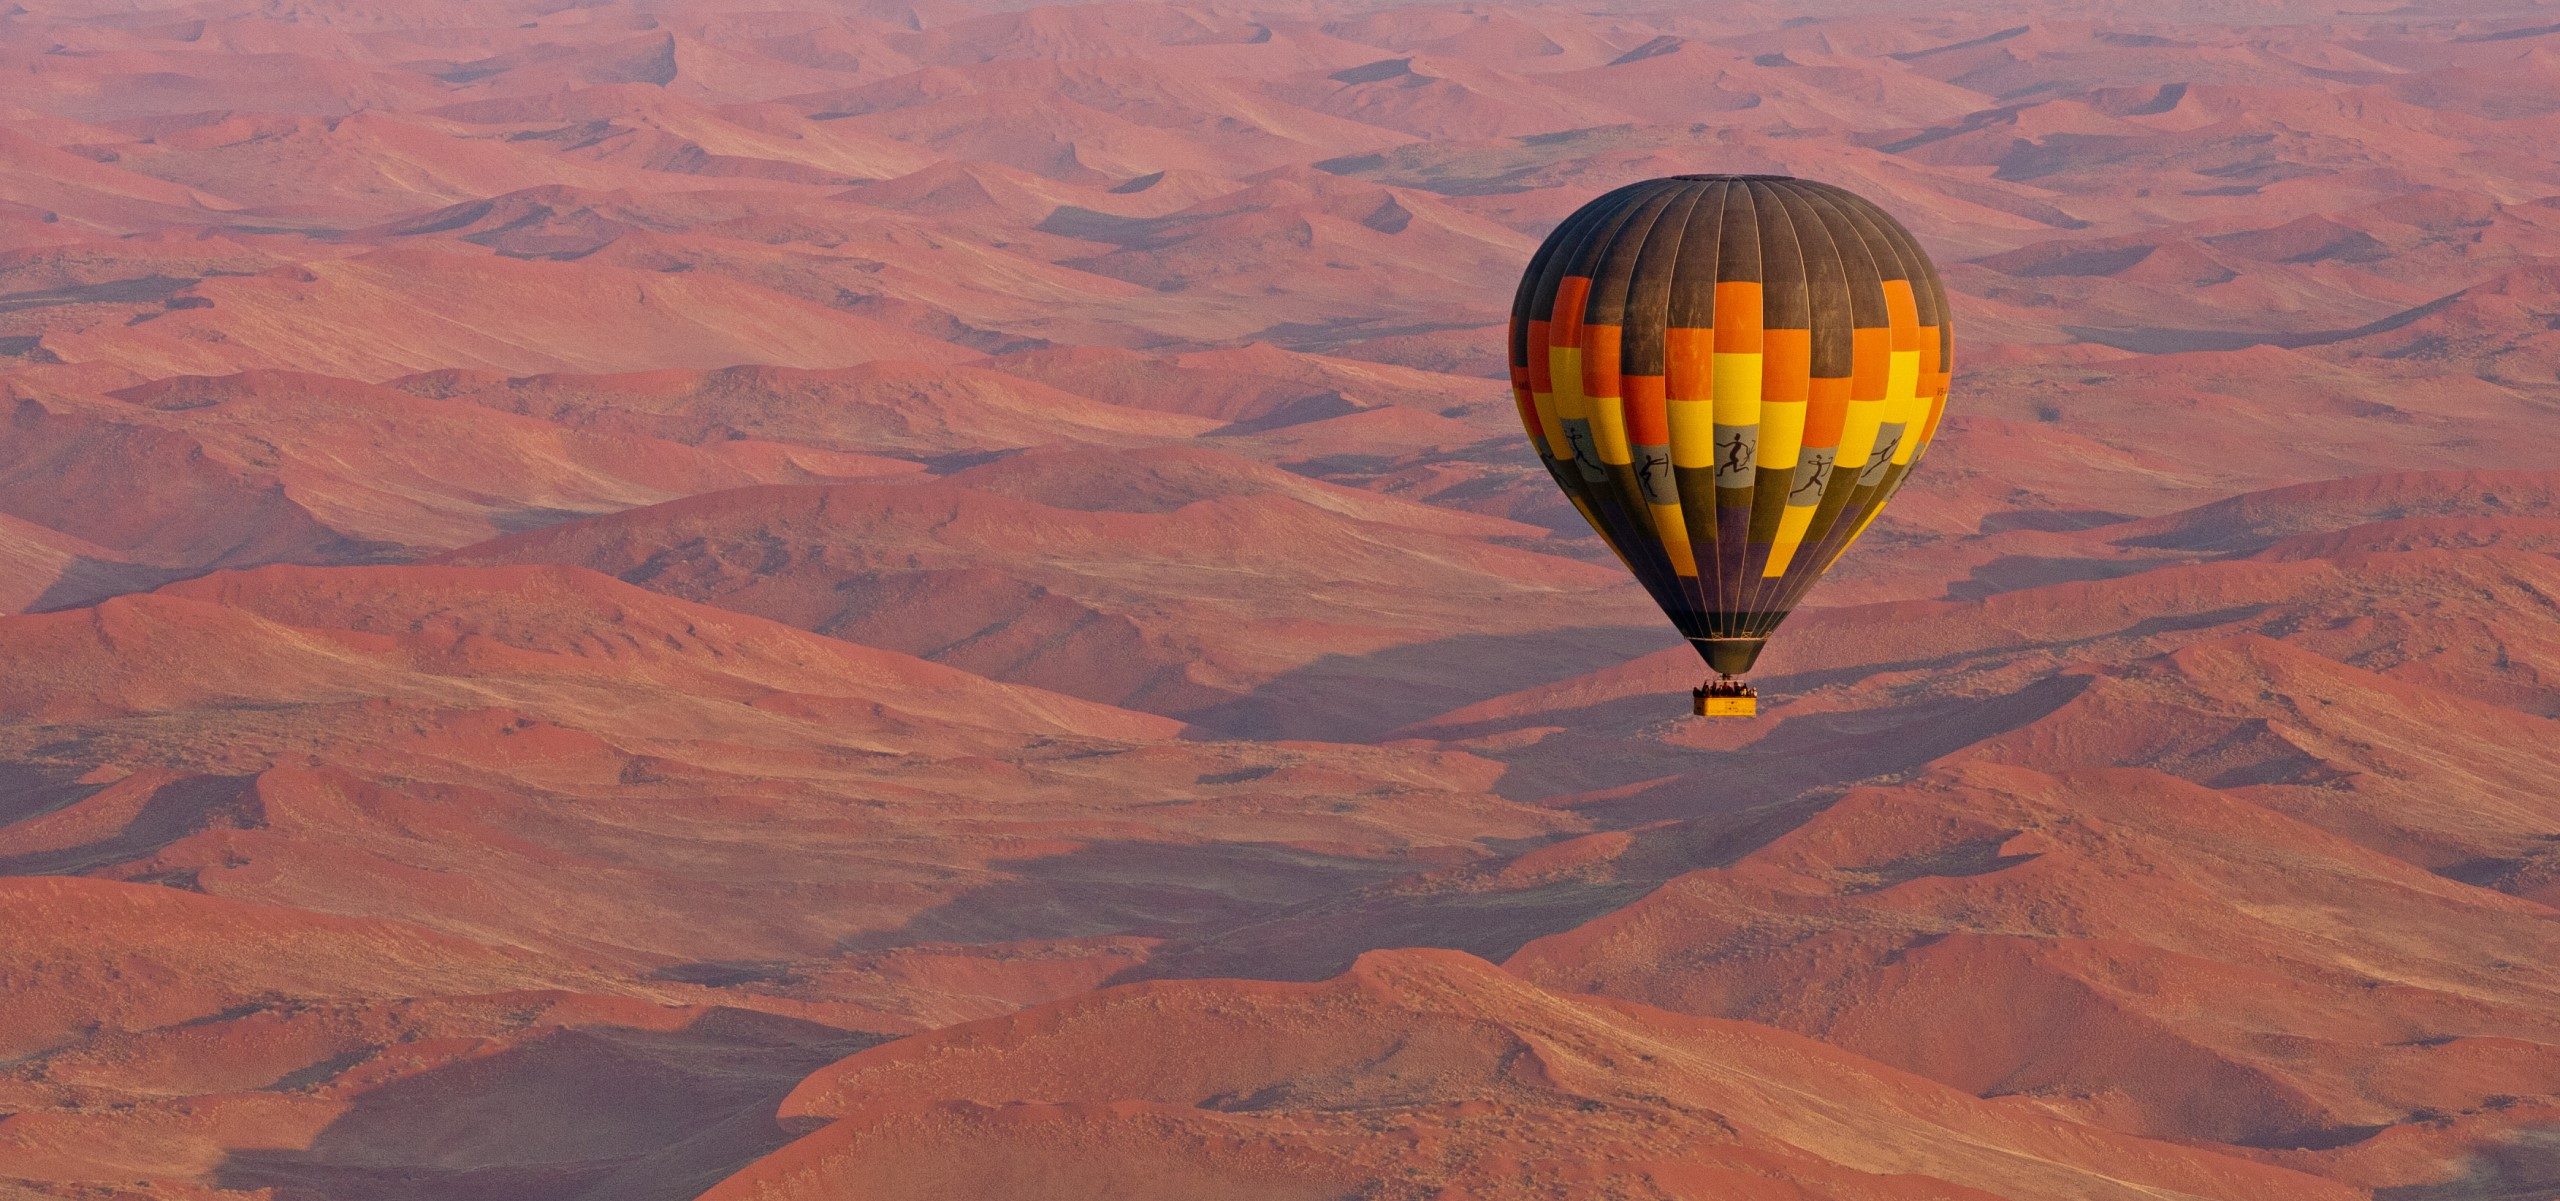 Namibia - ballooning